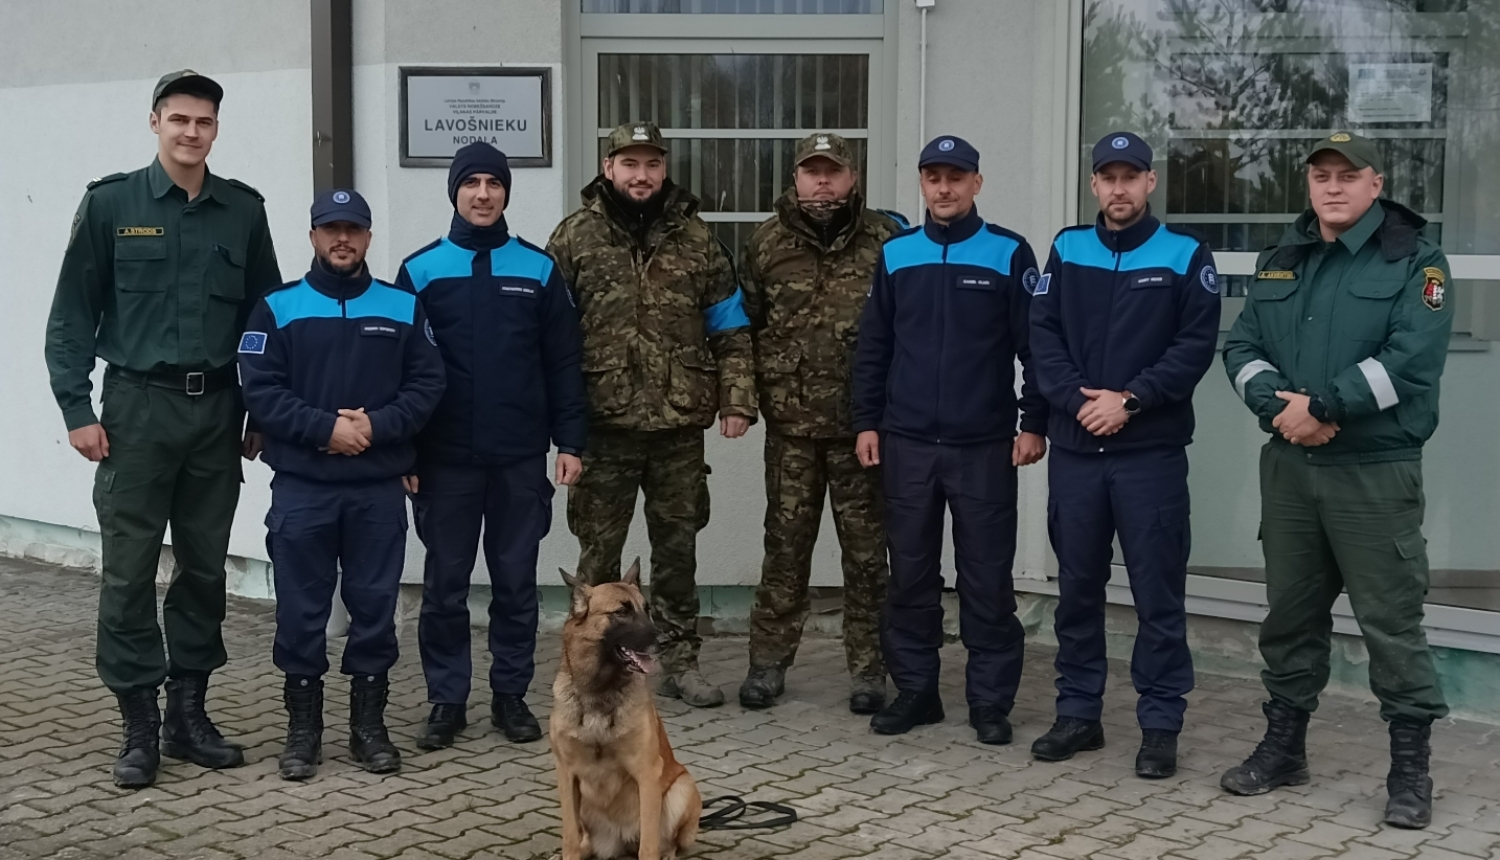 Latvijā norisinās Eiropas Robežu un krasta apsardzes aģentūras (FRONTEX) topošo patstāvīgā korpusa ekspertu pamatapmācības praktiskā daļa